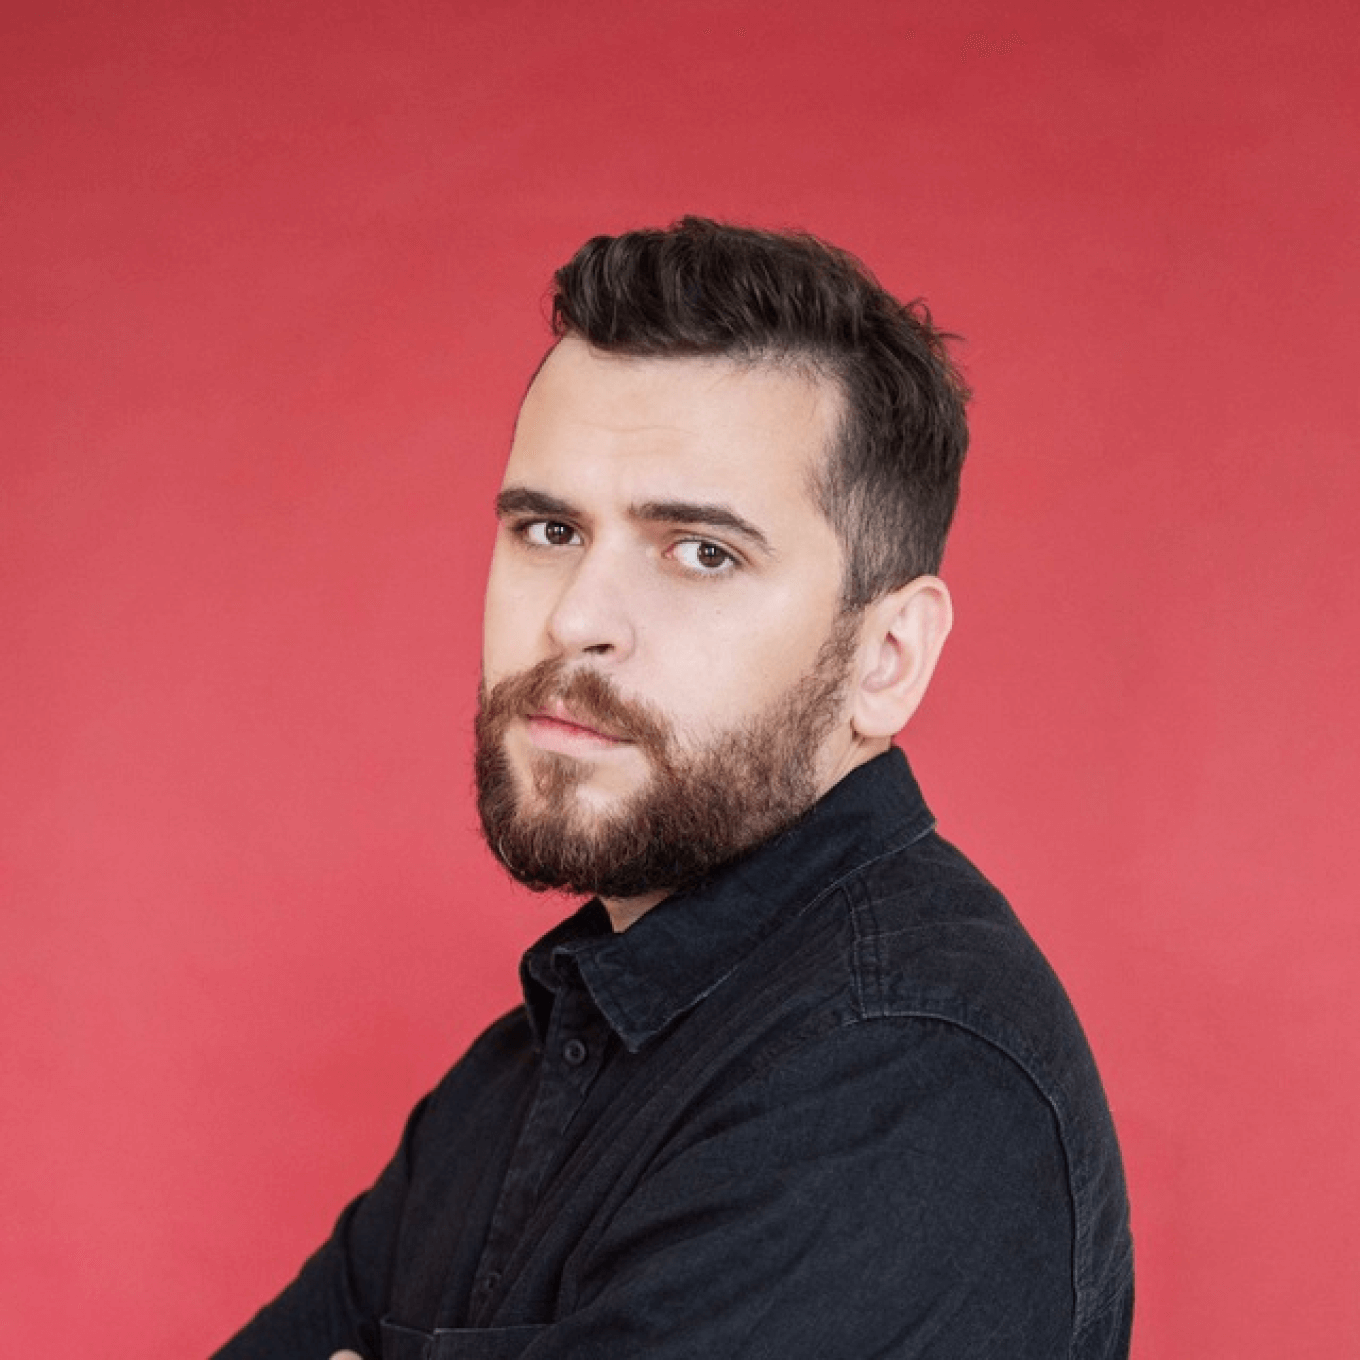 Алексей Ткачук, SMM-стратег, блогер и создатель Dnative